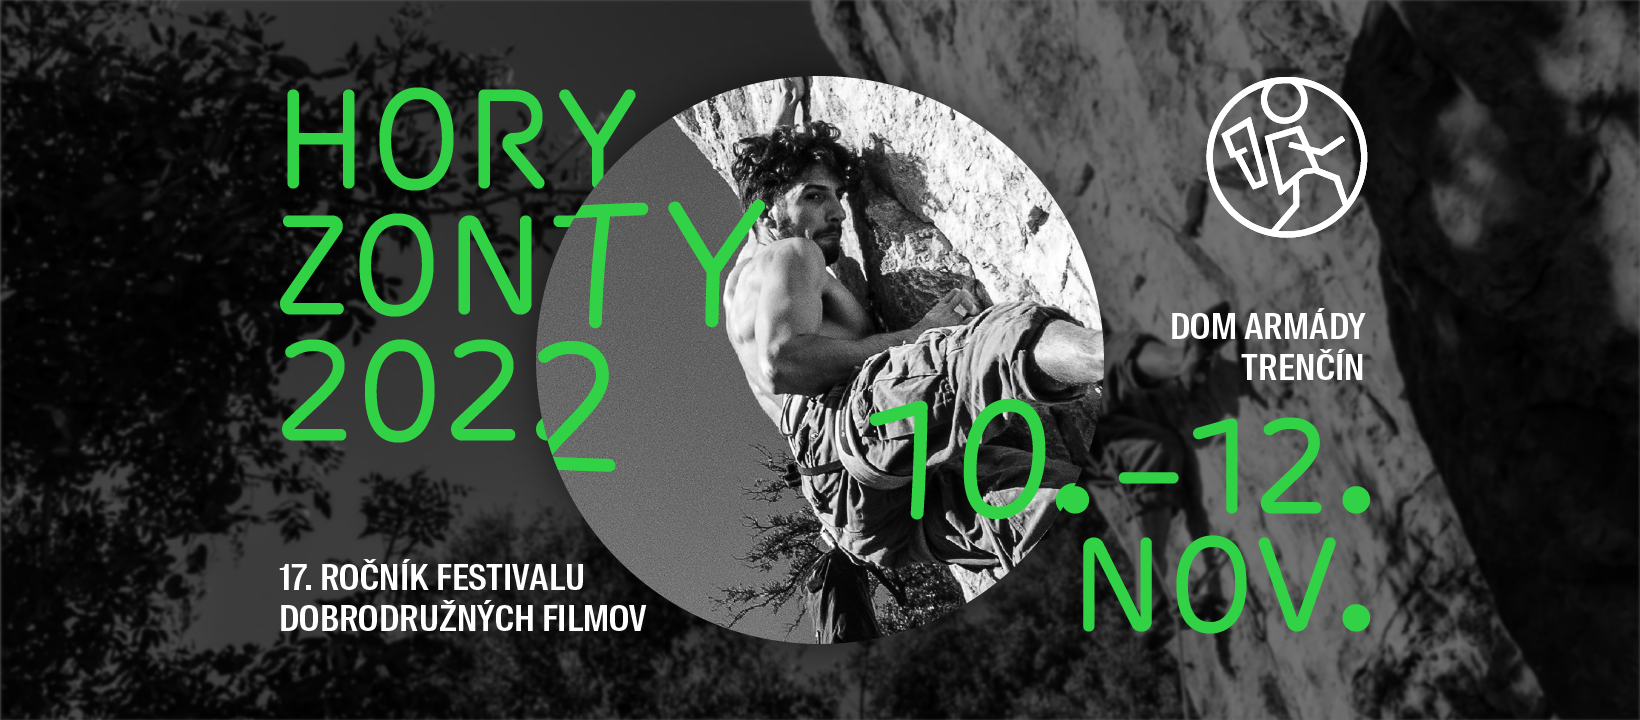 HoryZonty 2022 - Festival dobrodružných filmov